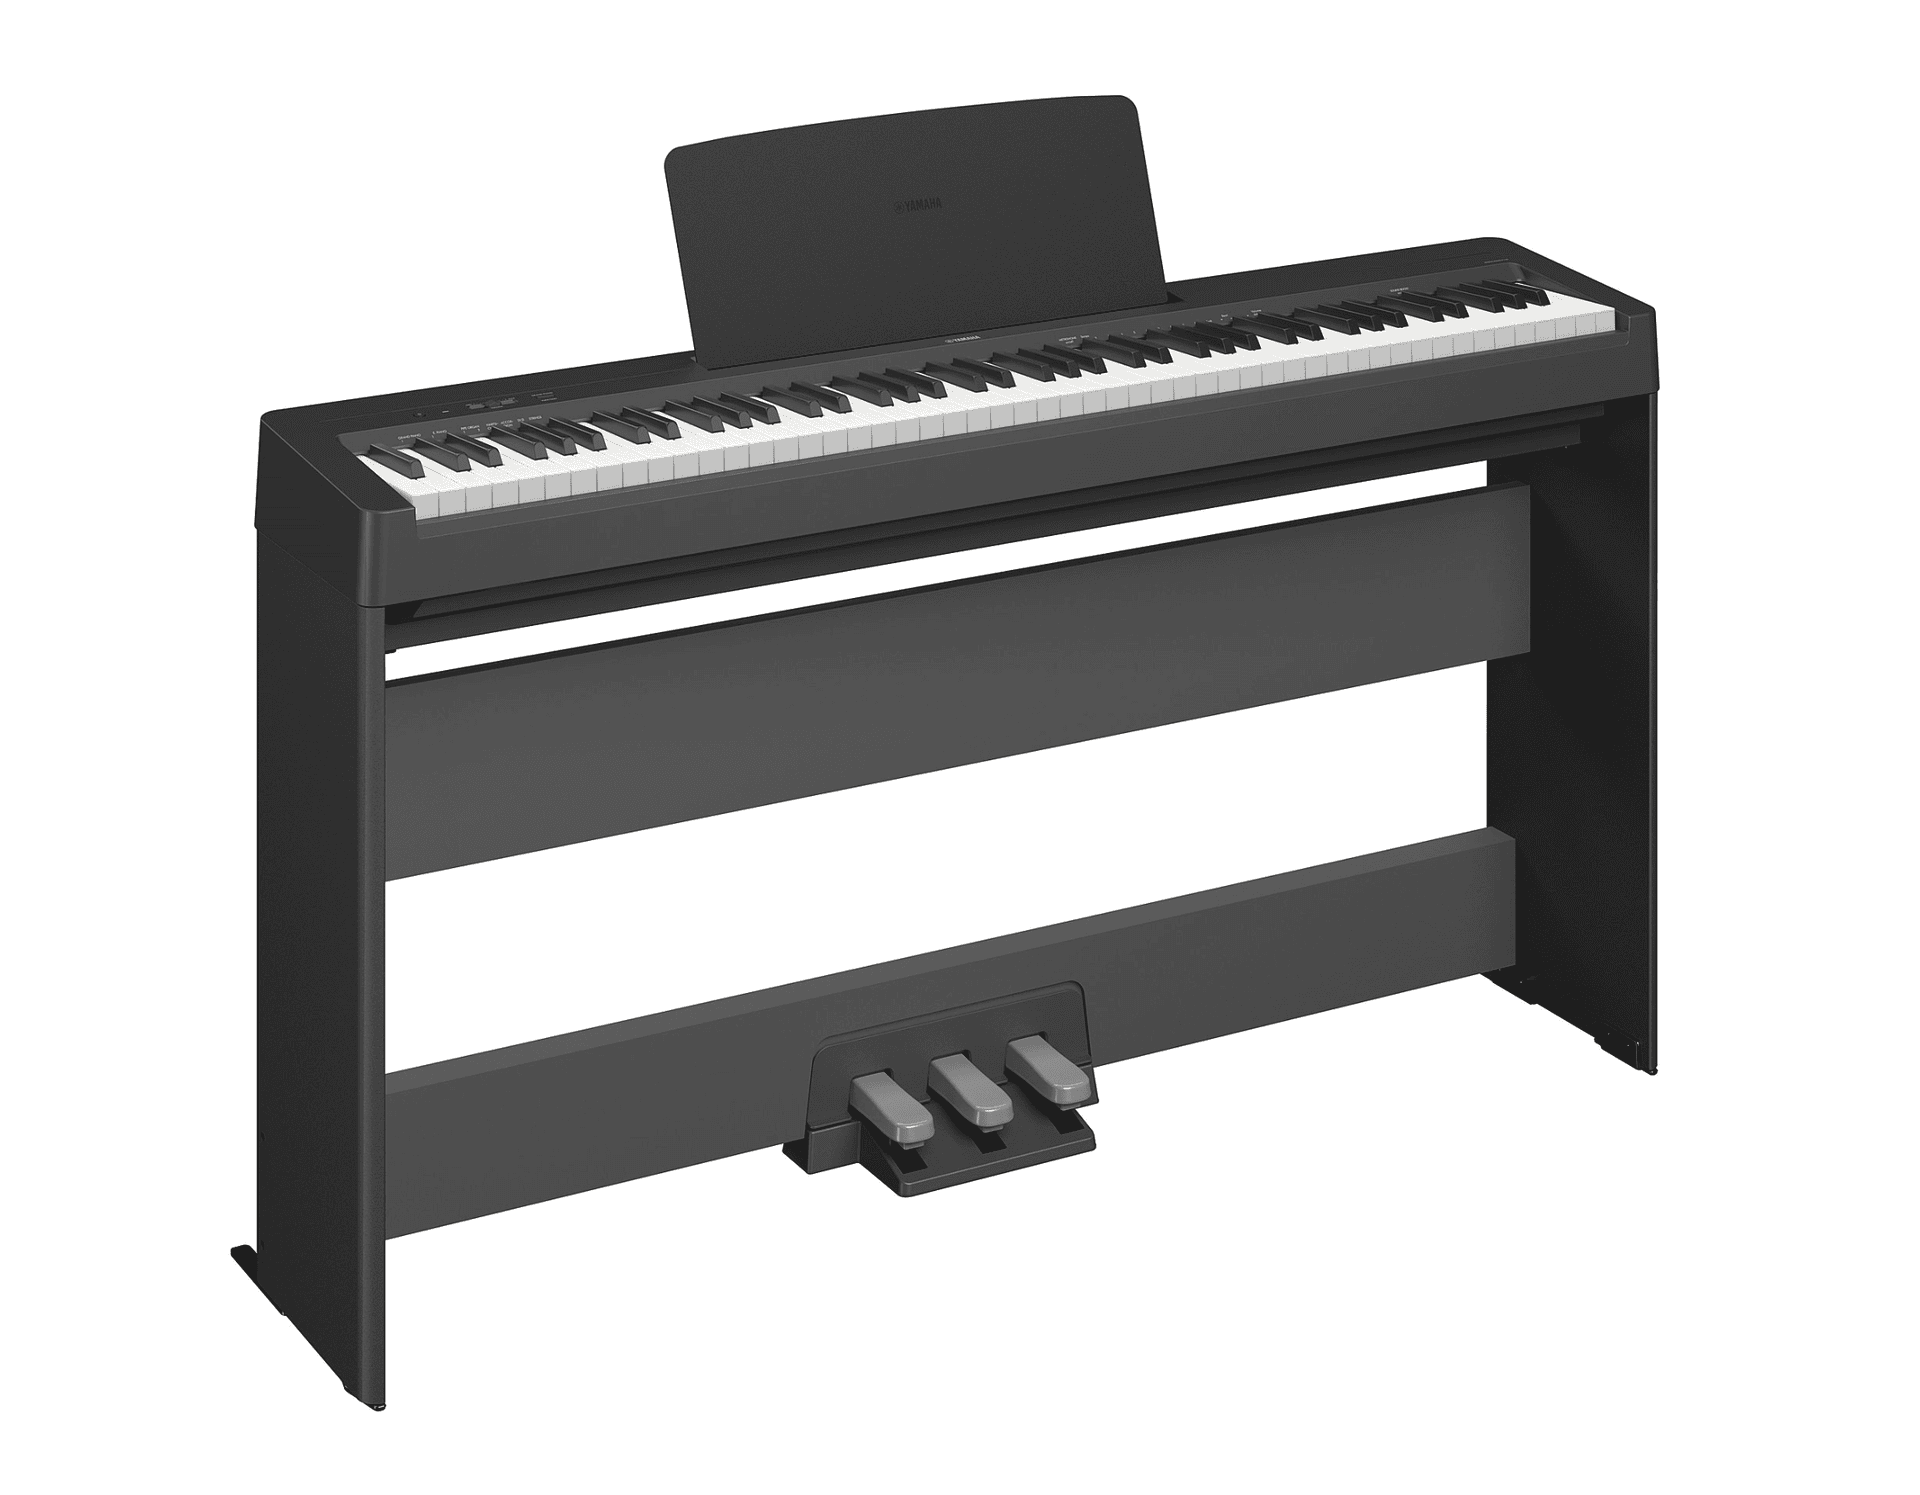 Piano Casio pas cher - Achat neuf et occasion à prix réduit